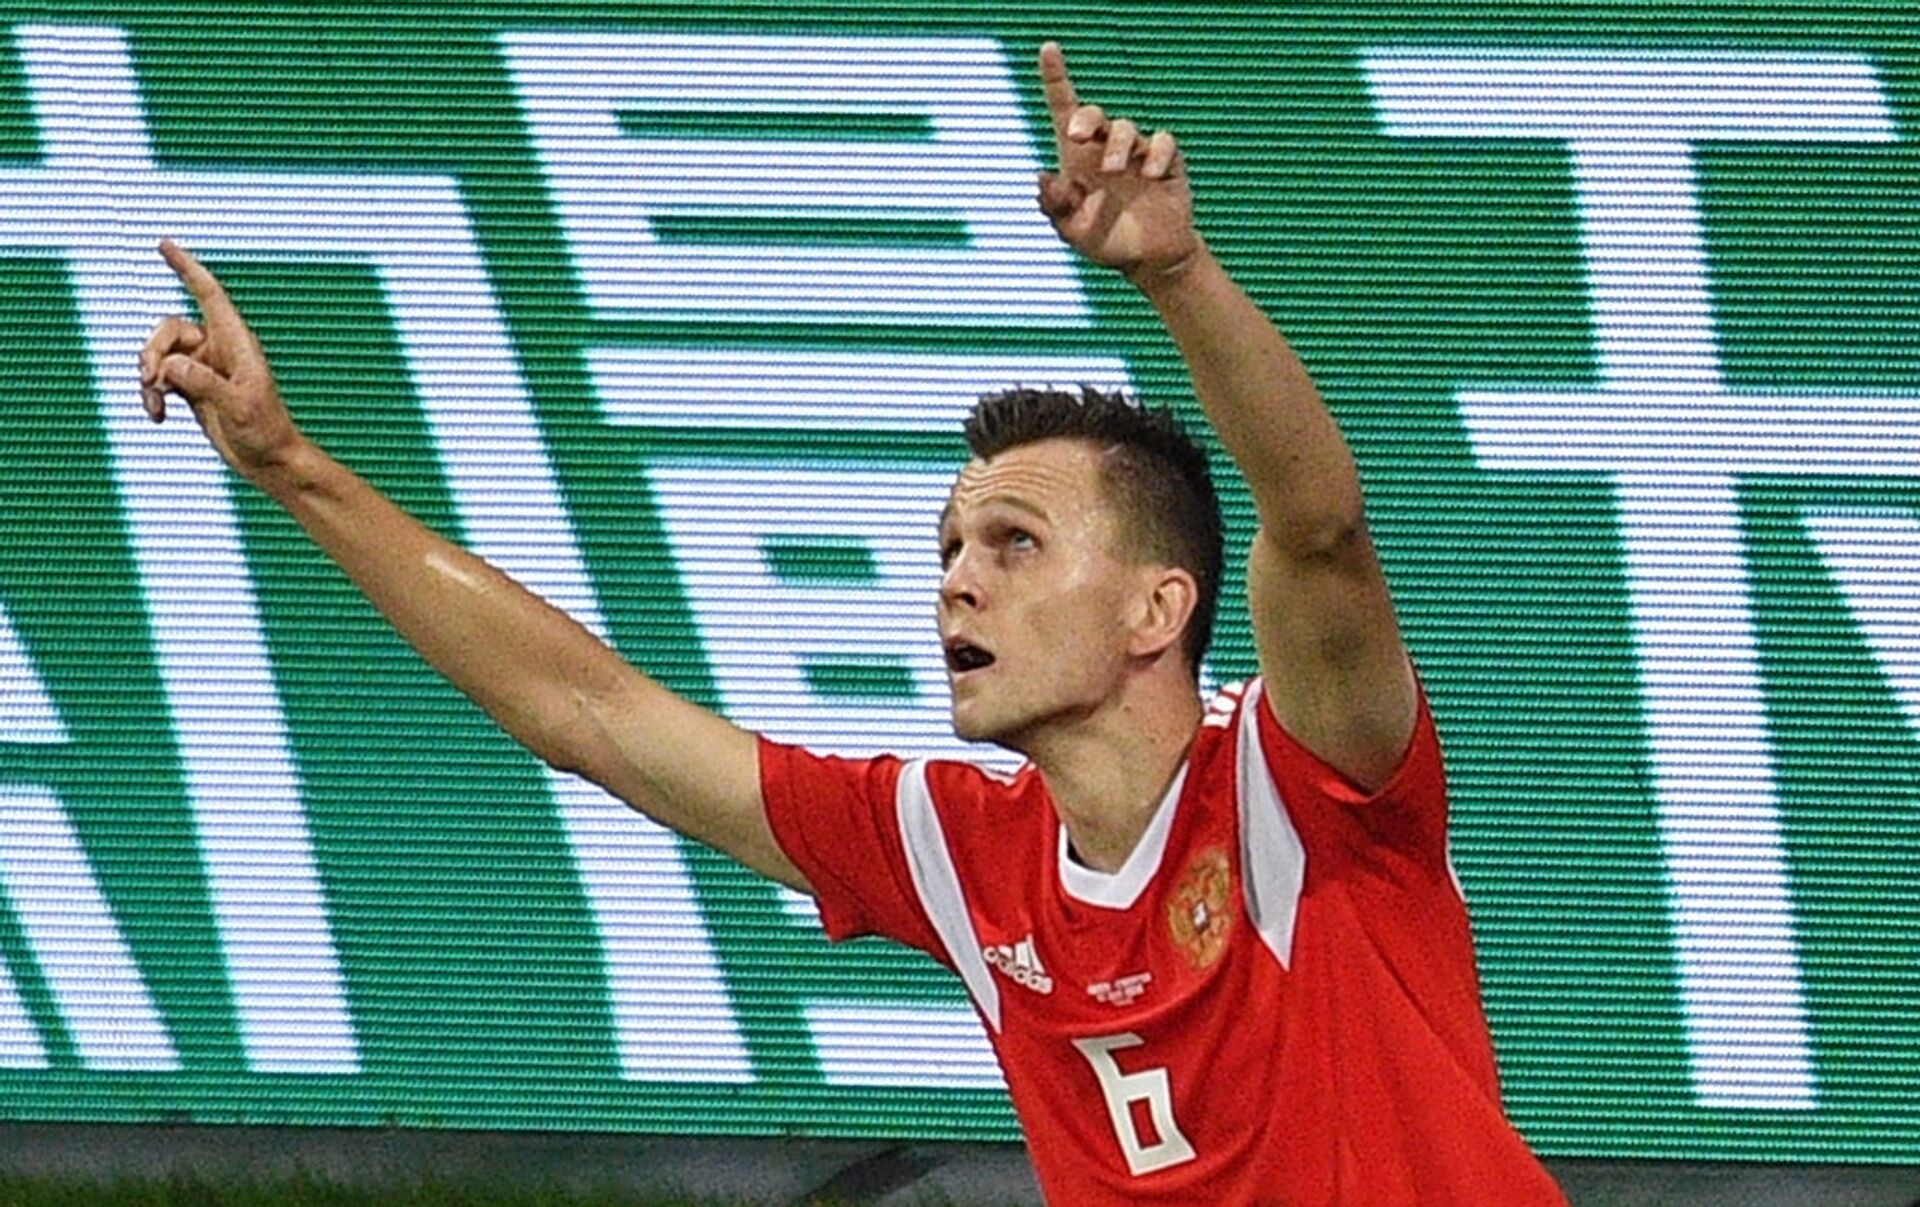 El futbolista ruso Chéryshev jugará en el la próxima - 14.08.2018, Sputnik Mundo